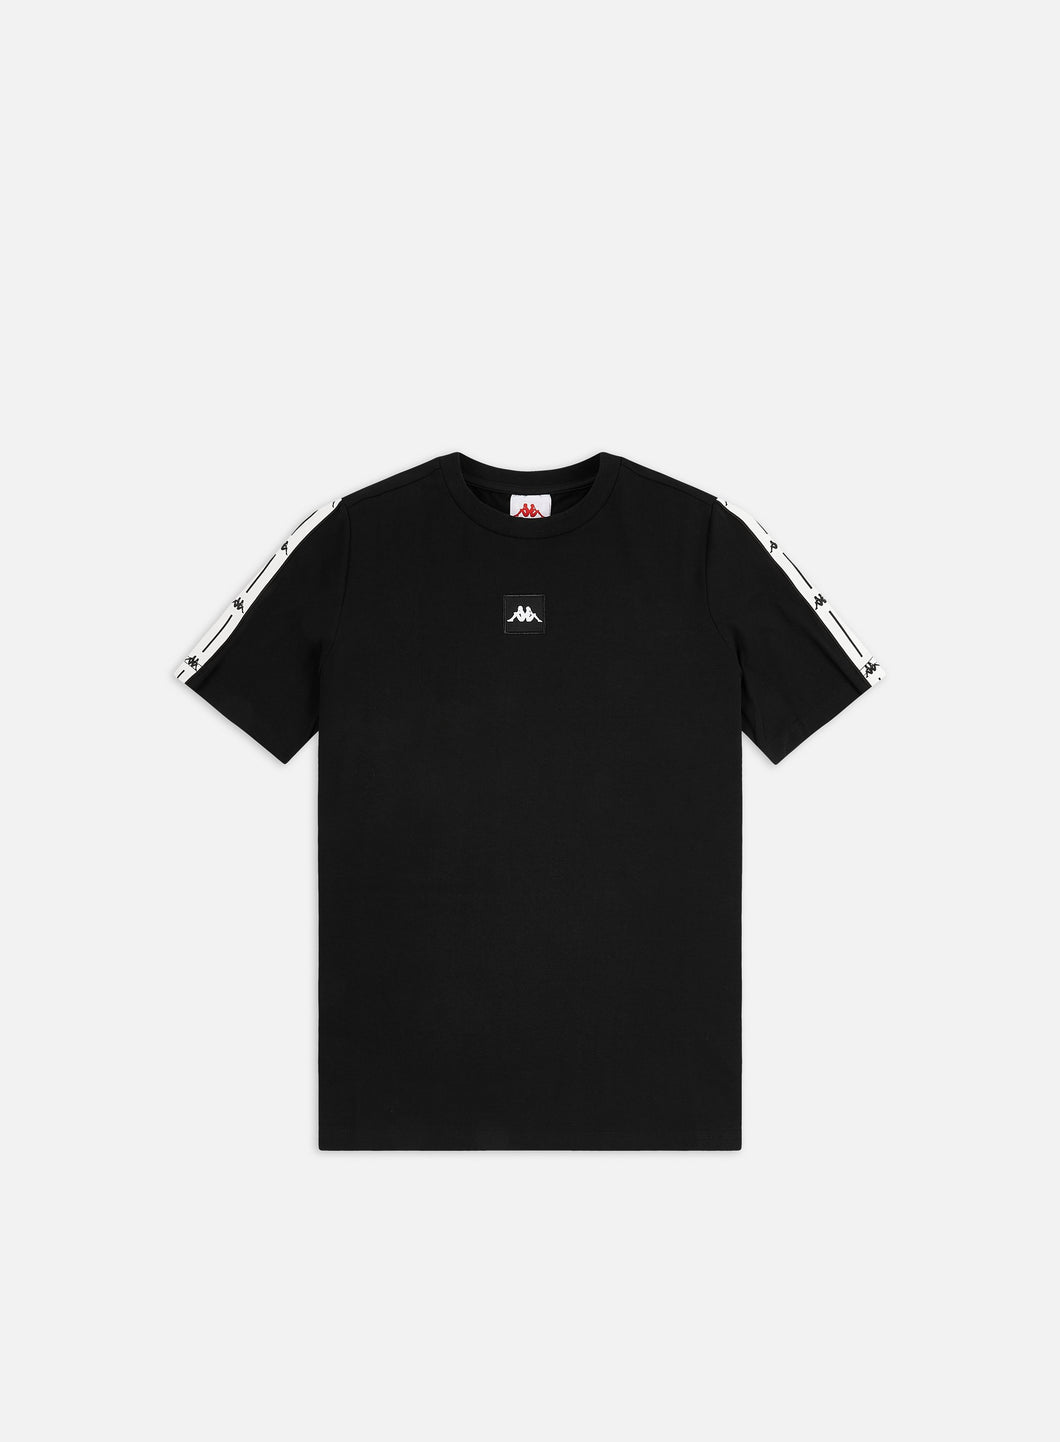 Kappa SS21 JPN Devo T-shirt Black